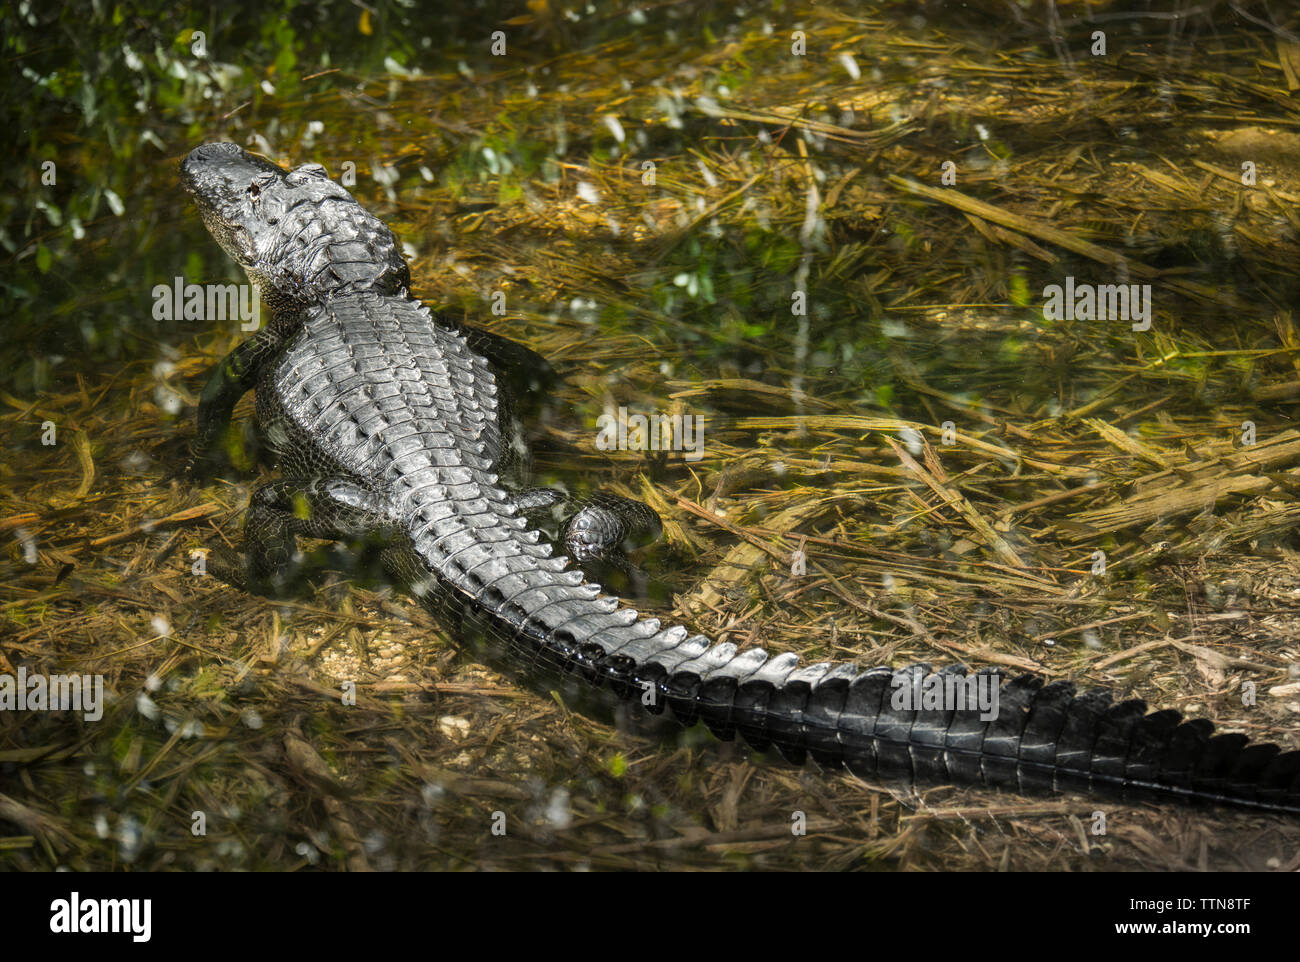 Krokodil in Sumpf am Wald Stockfoto